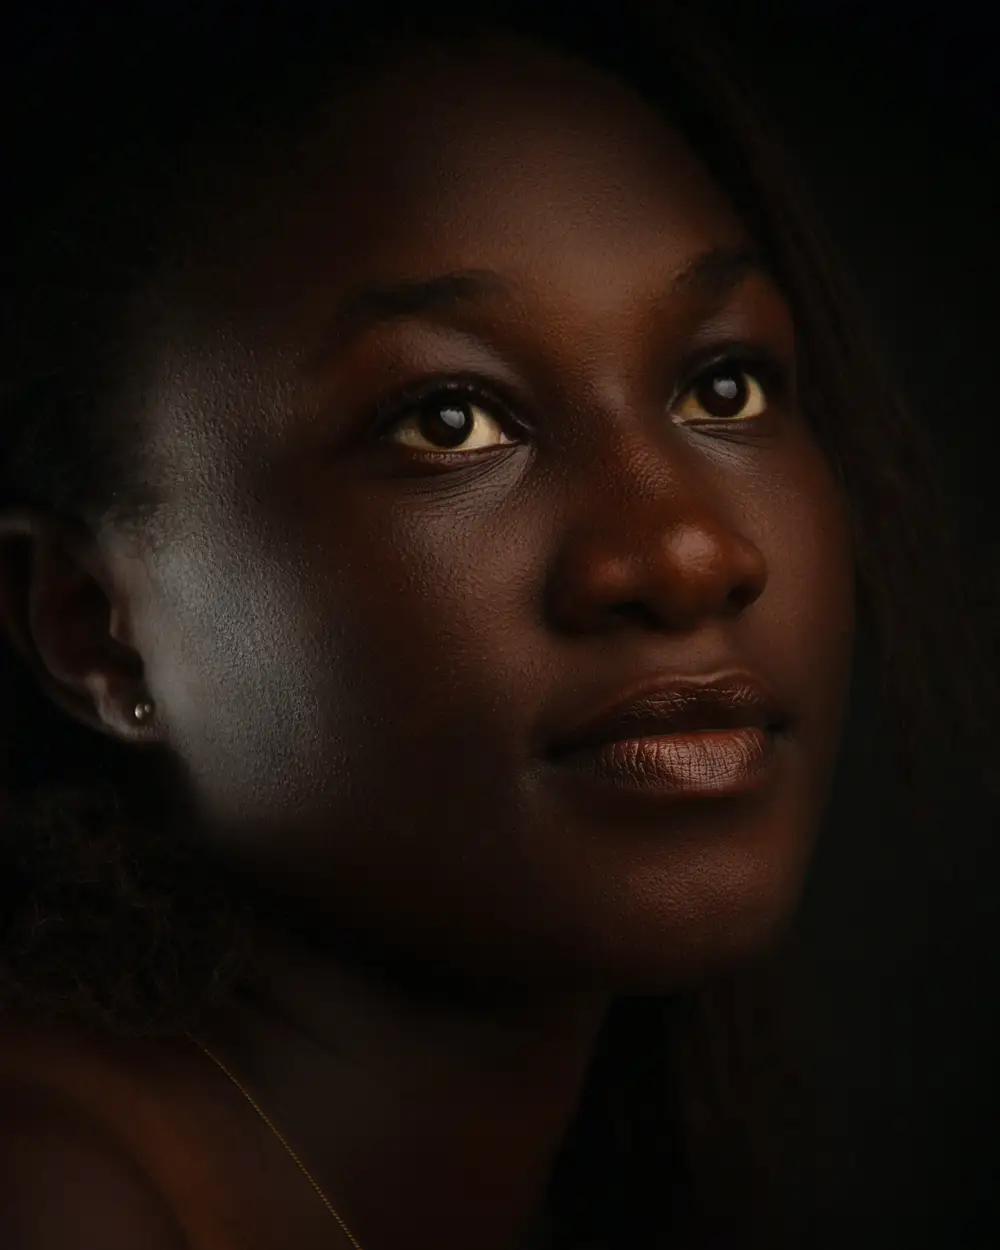 Black girl portrait